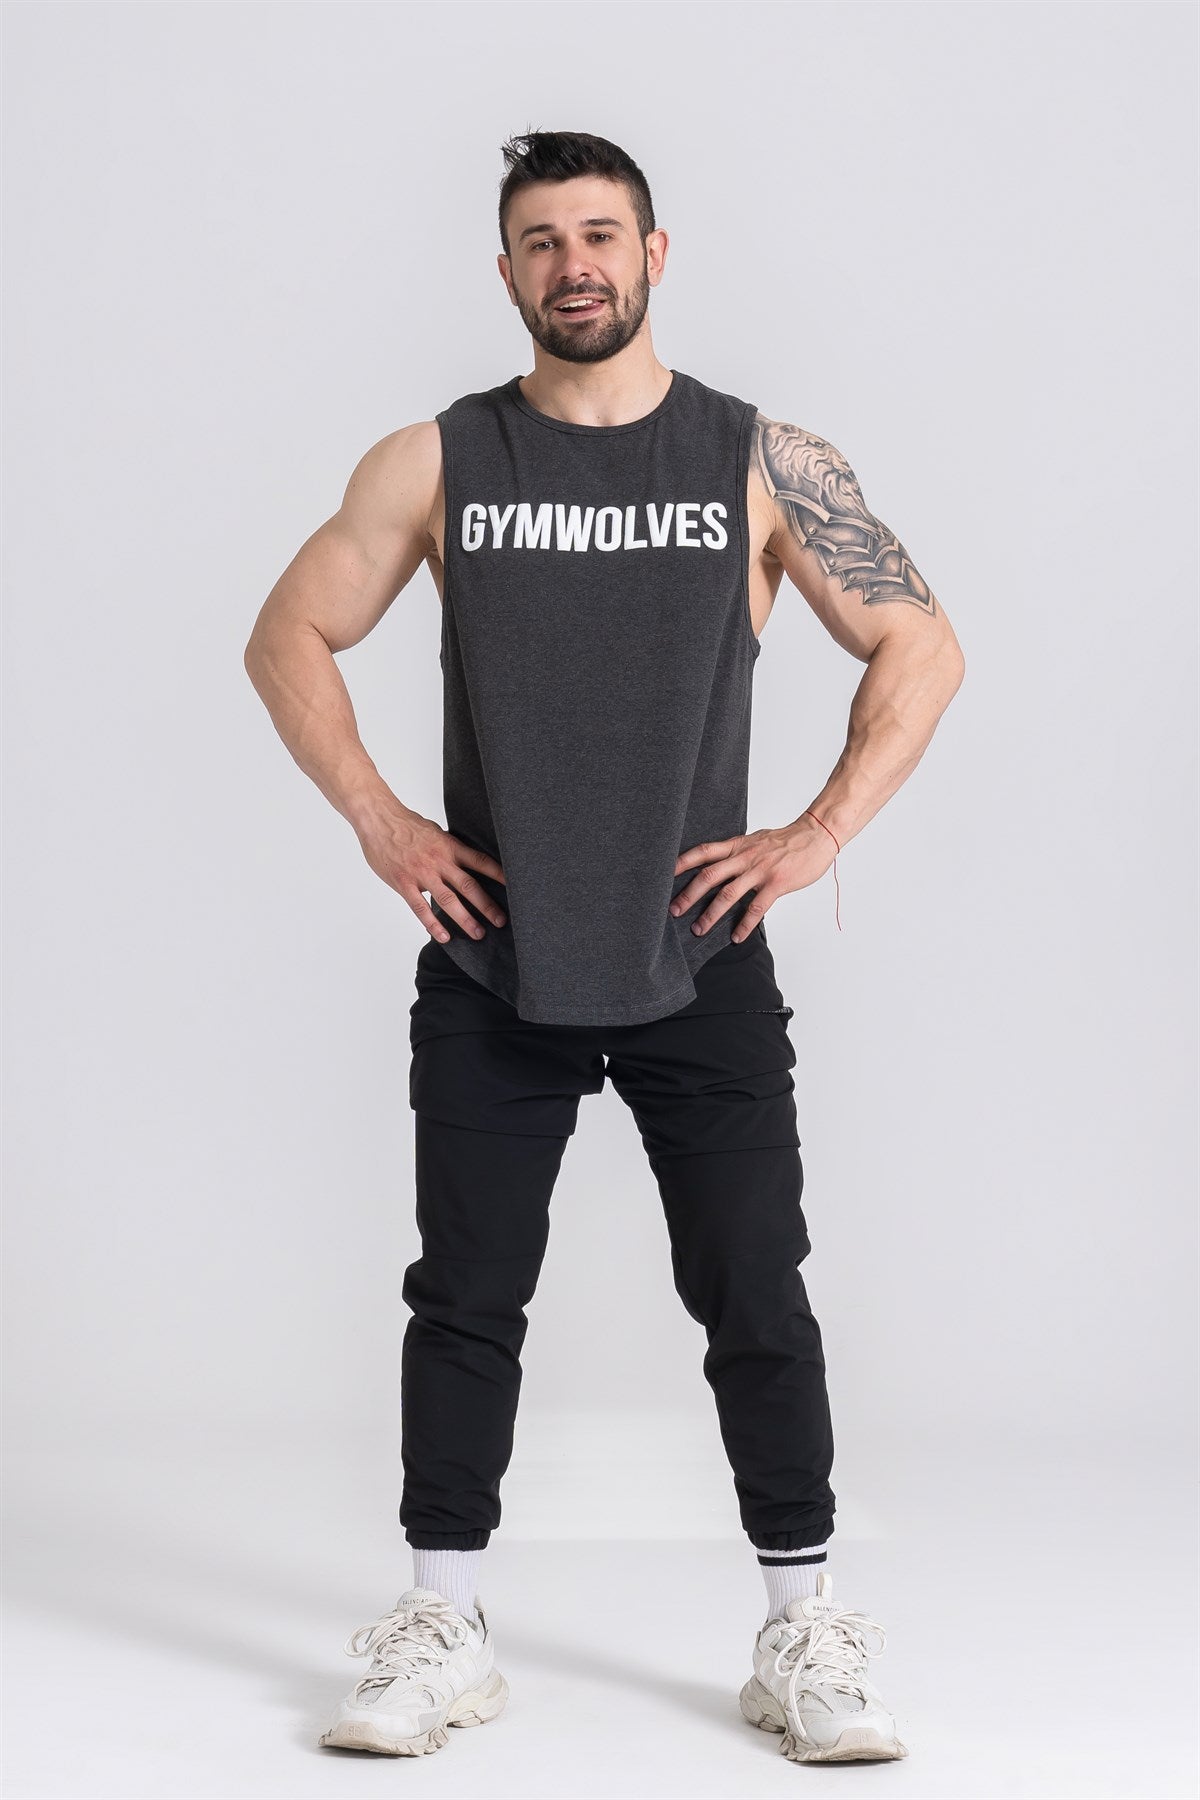 Gymwolves Man Sleeveless T-Shirt | Man Sport T-shirt | Workout Tanktop |